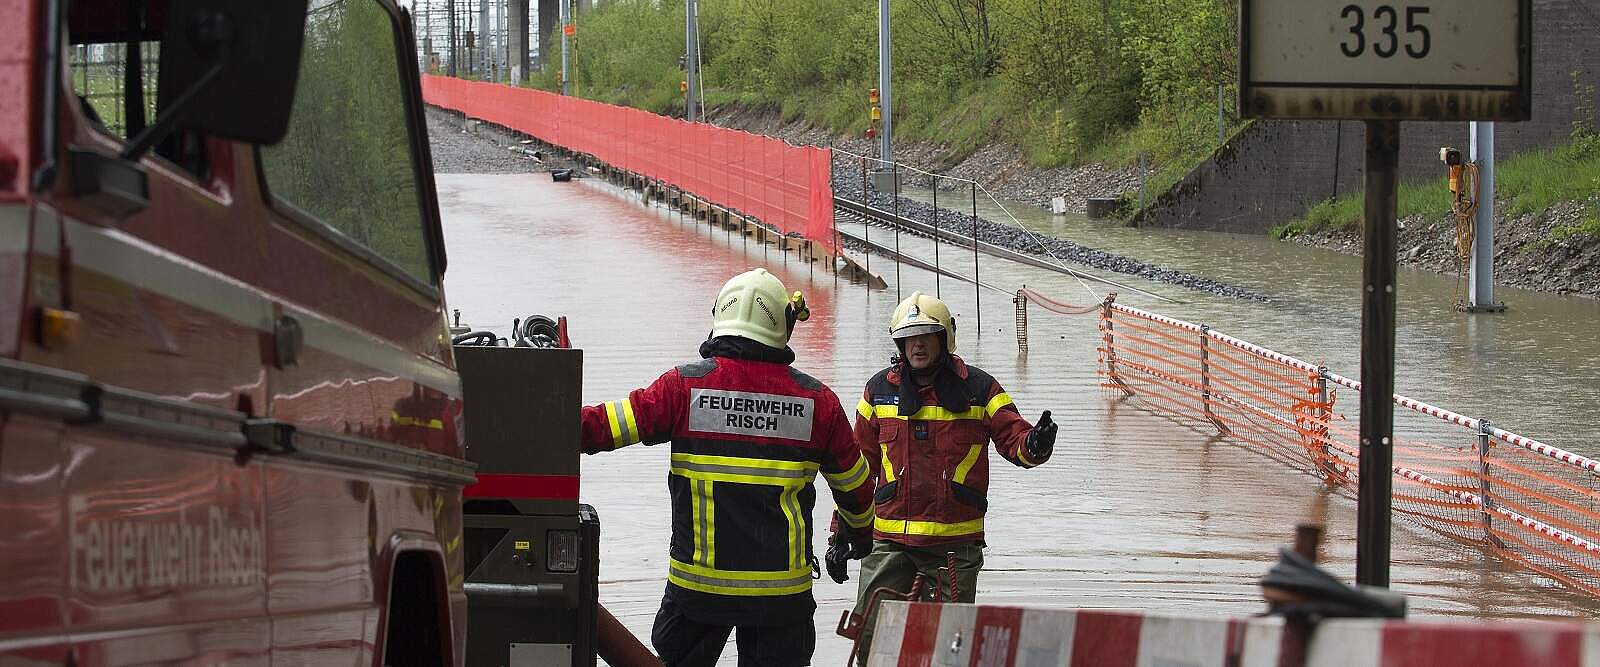 Intervention des pompiers après une crue des eaux